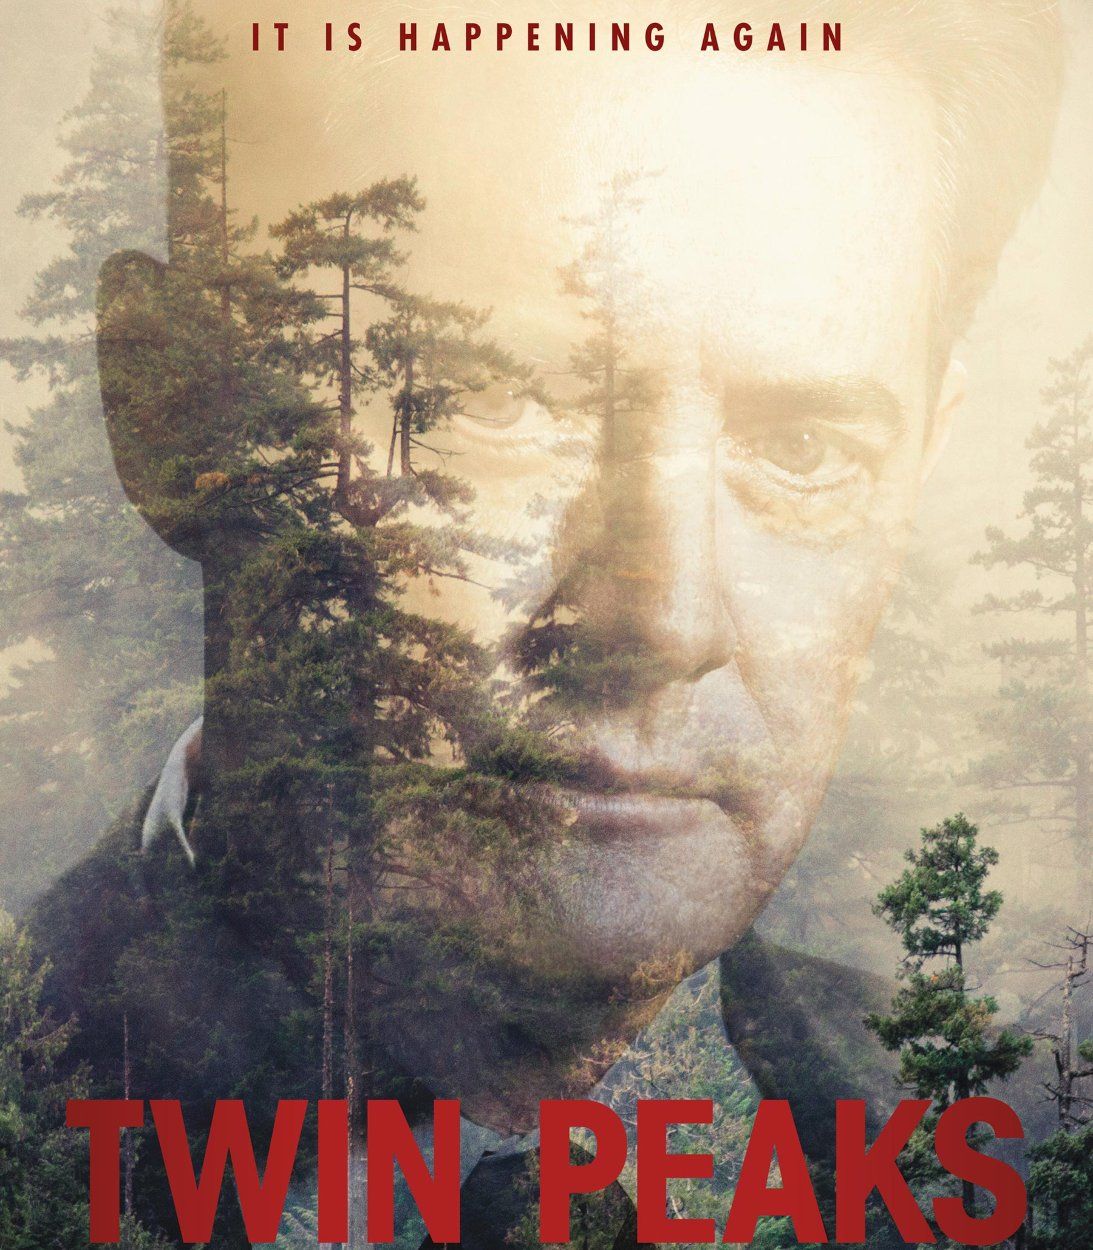 twin peaks return poster TLDR vertical